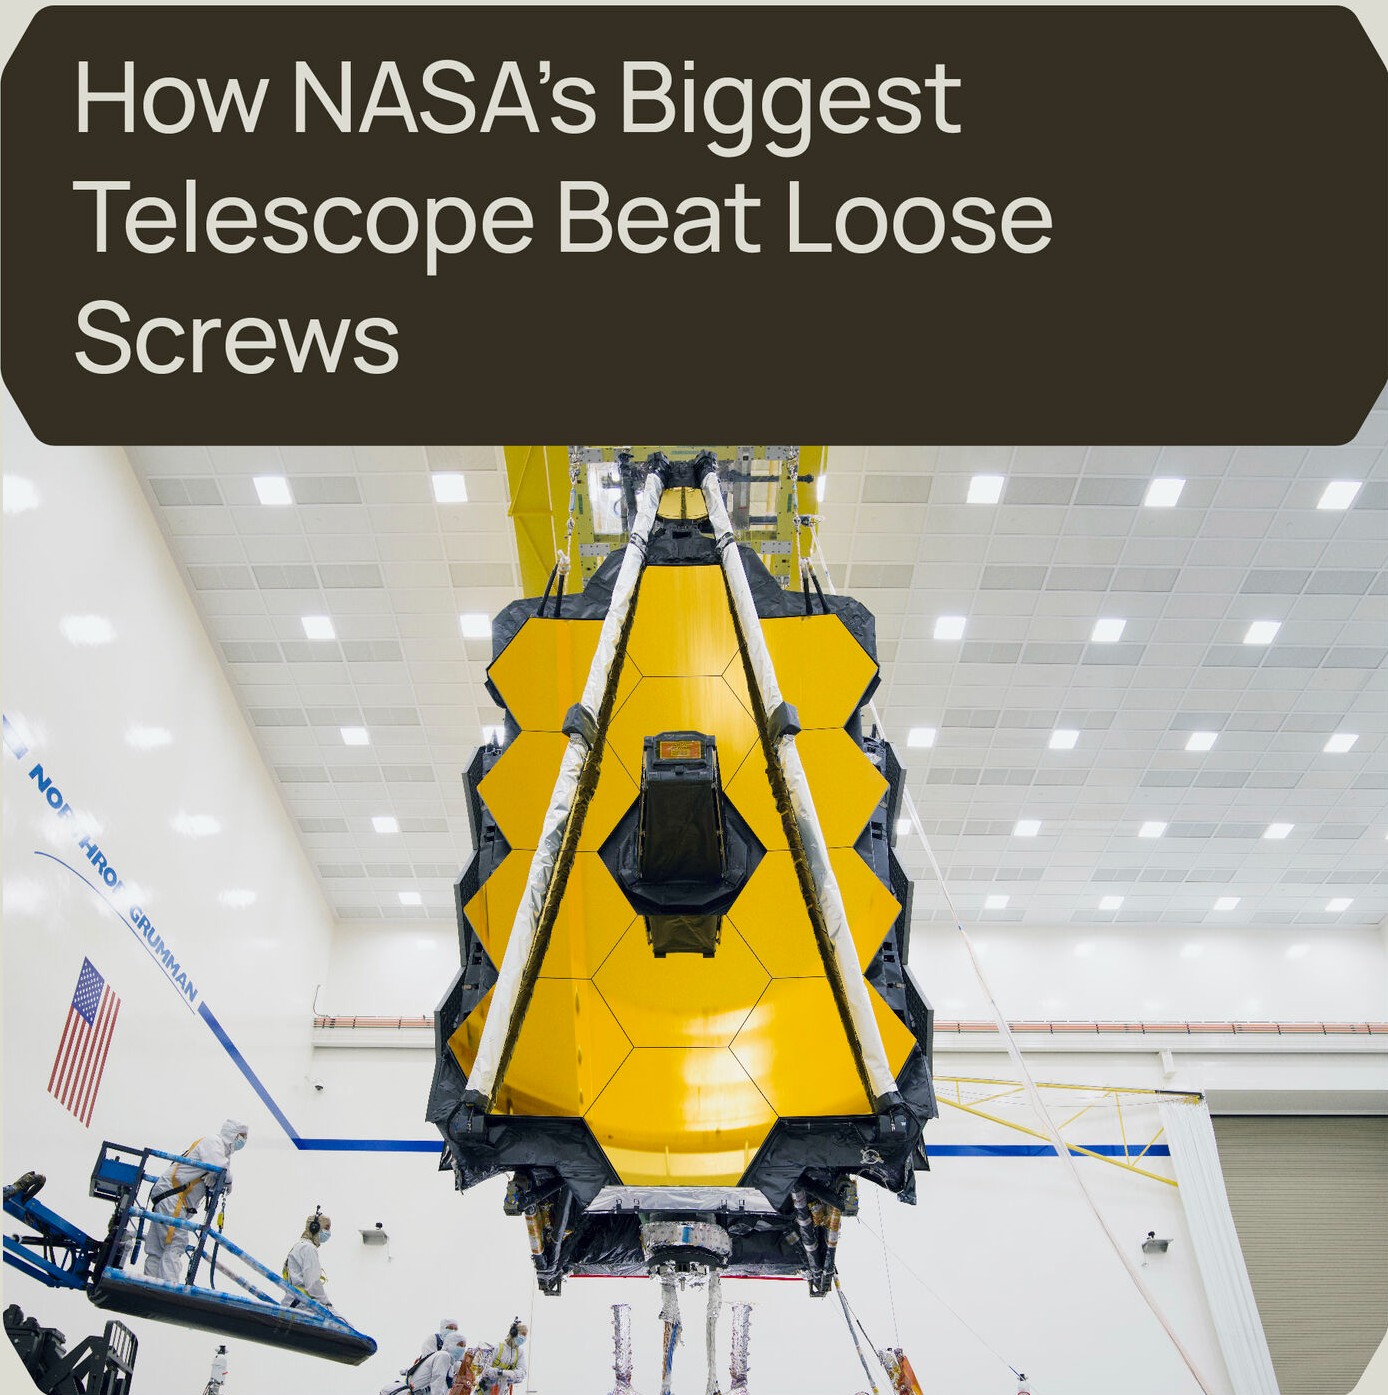 Πώς το Μεγαλύτερο Τηλεσκόπιο της NASA Νίκησε τις Χαλαρές Βίδες;